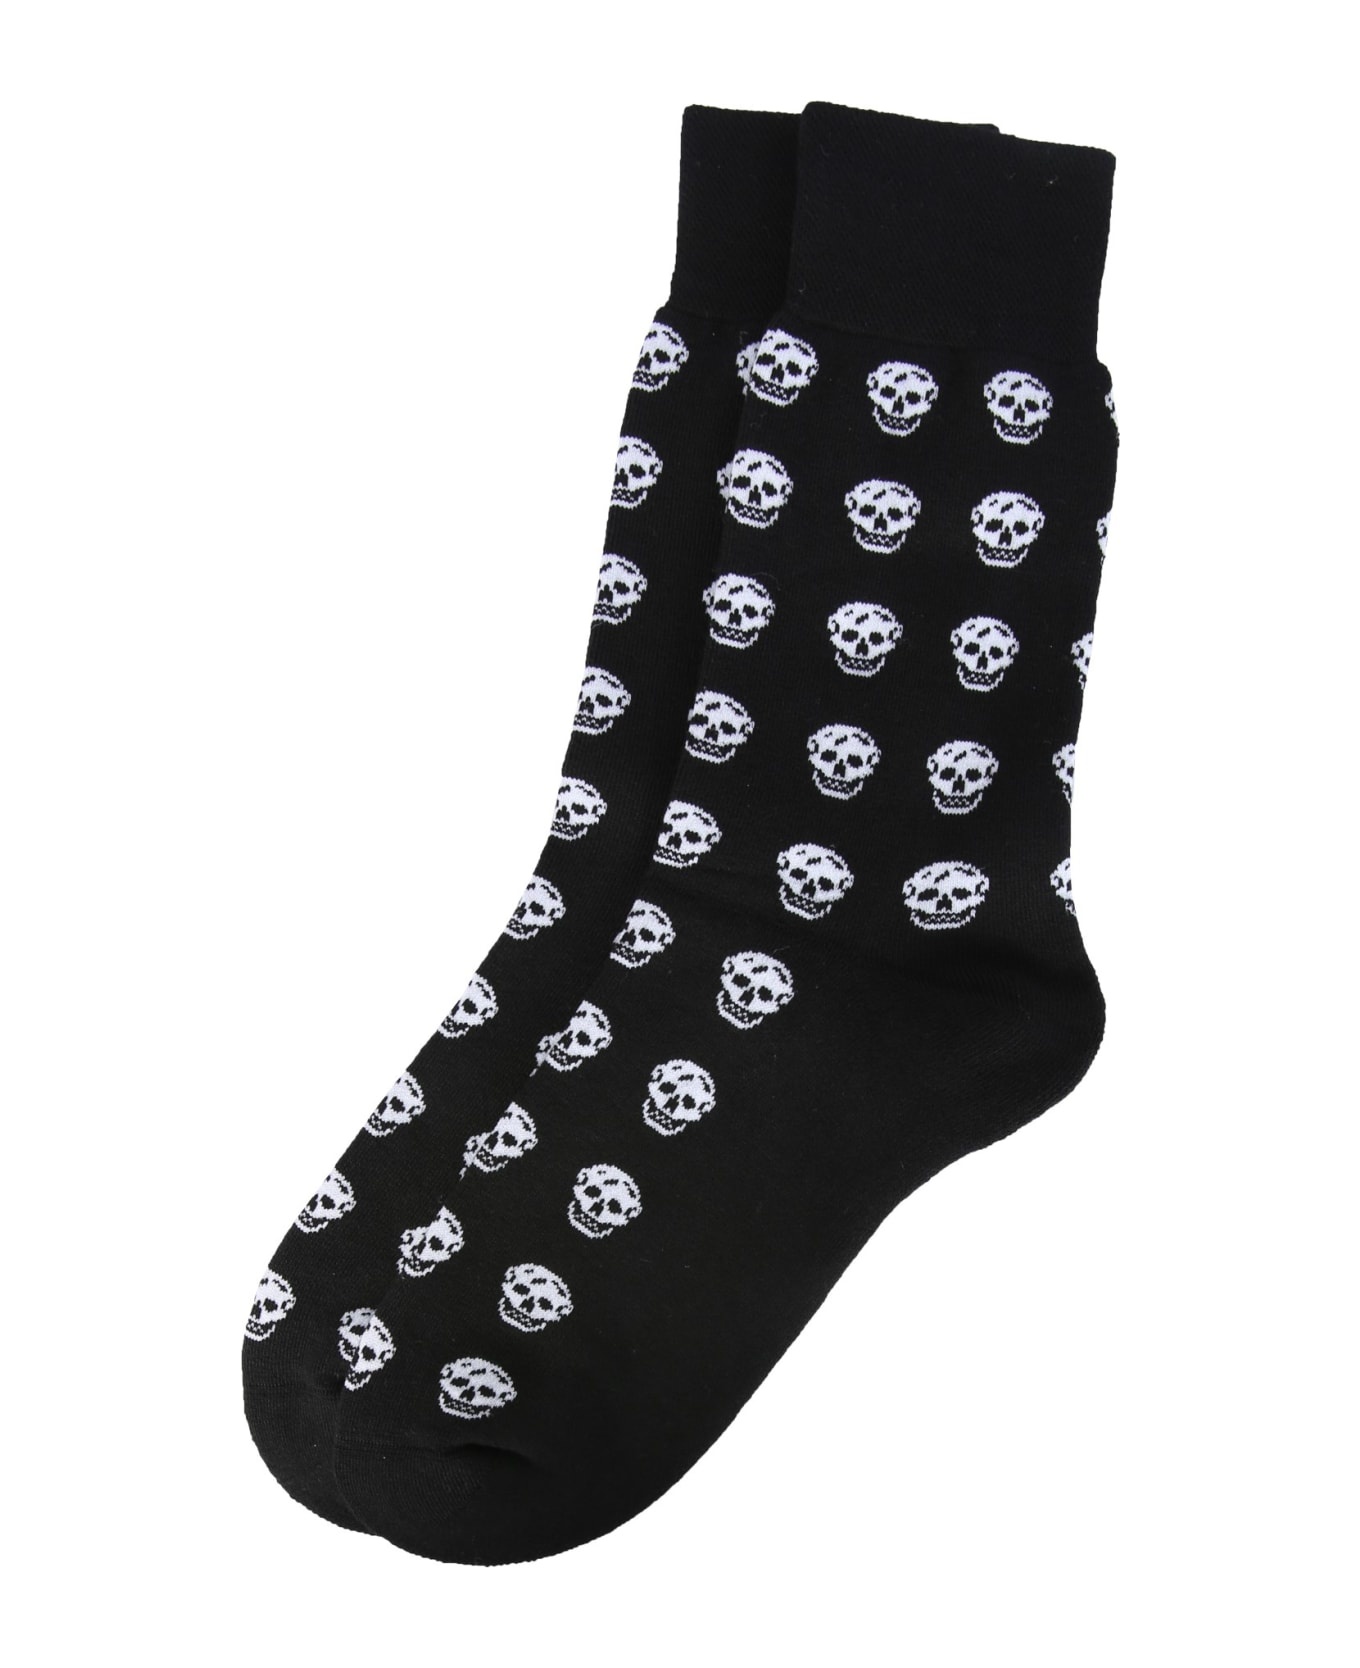 Skull Socks - 2